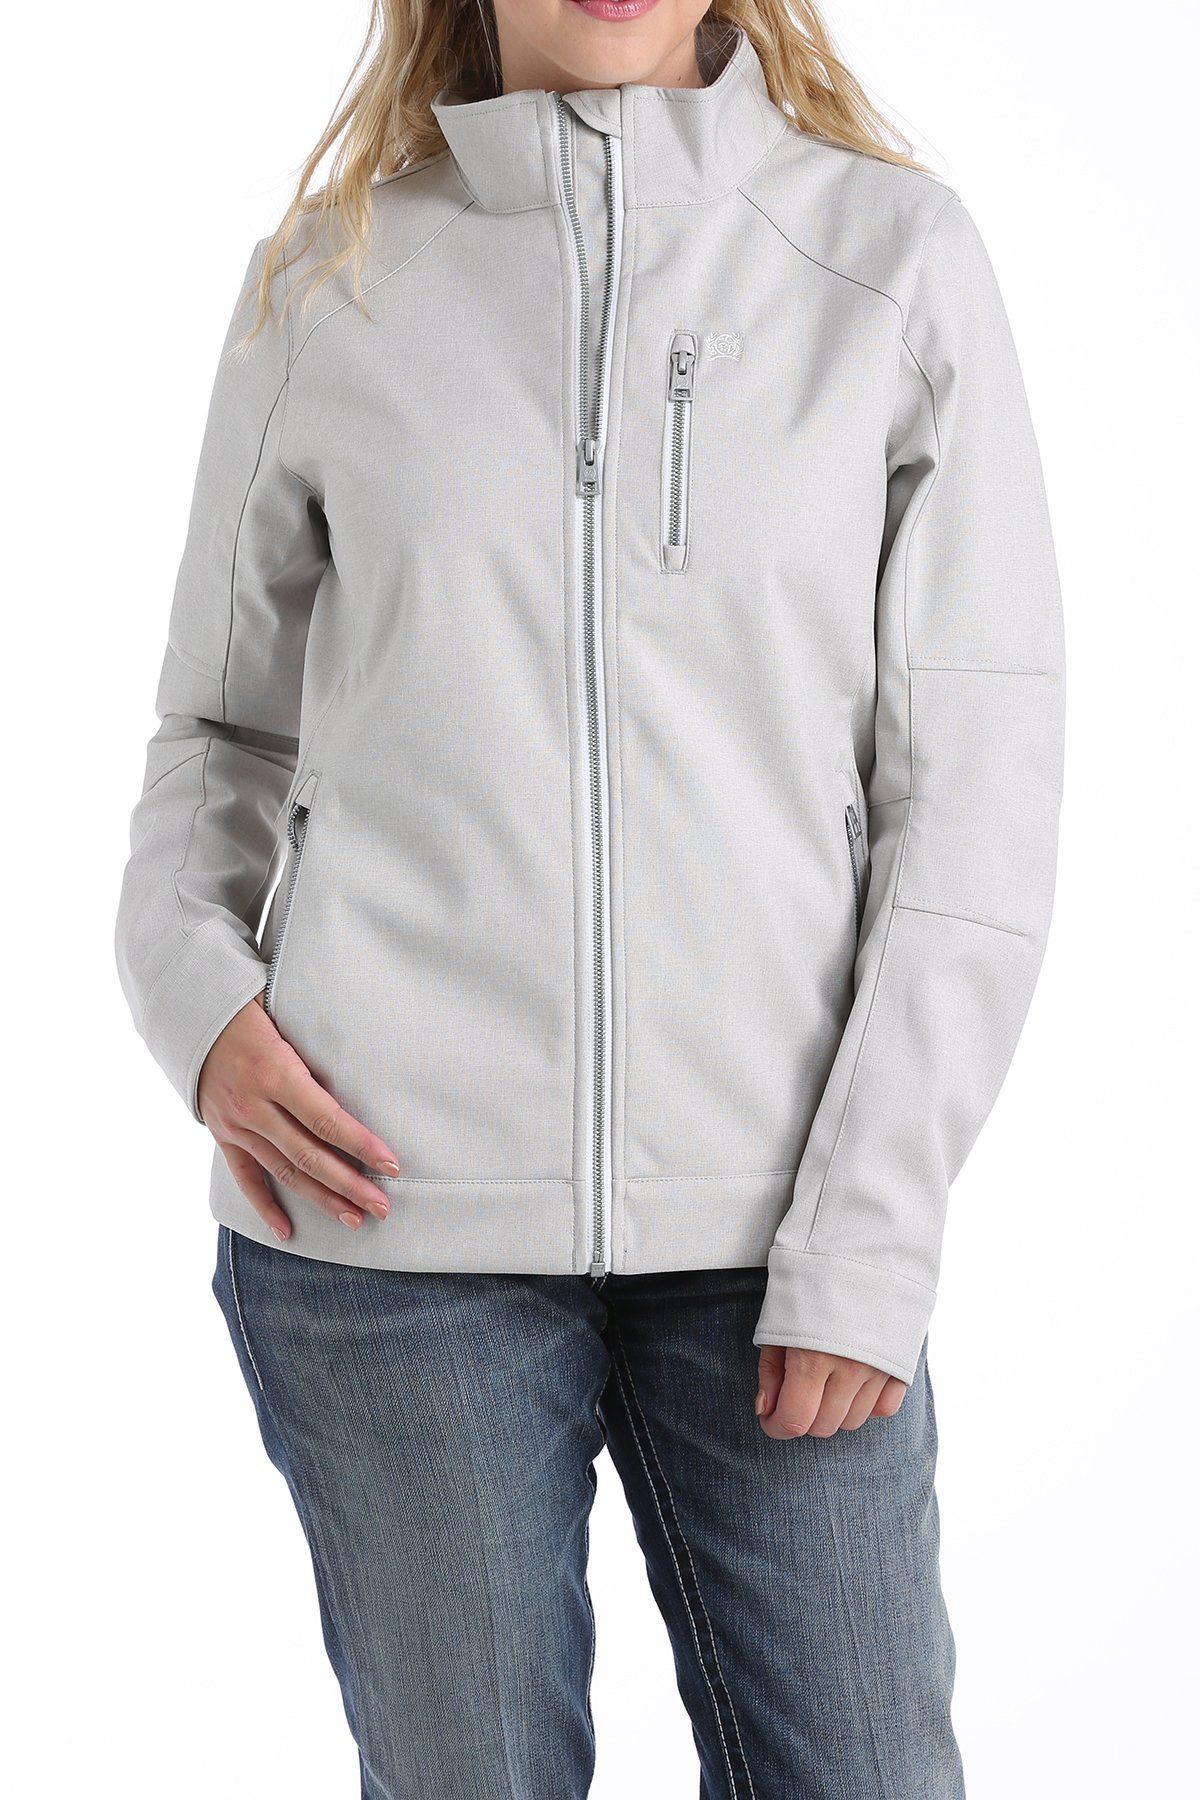 Cinch Women's Grey & Teal Textured Bonded Water Resistant Jacket Coat MAJ9833001